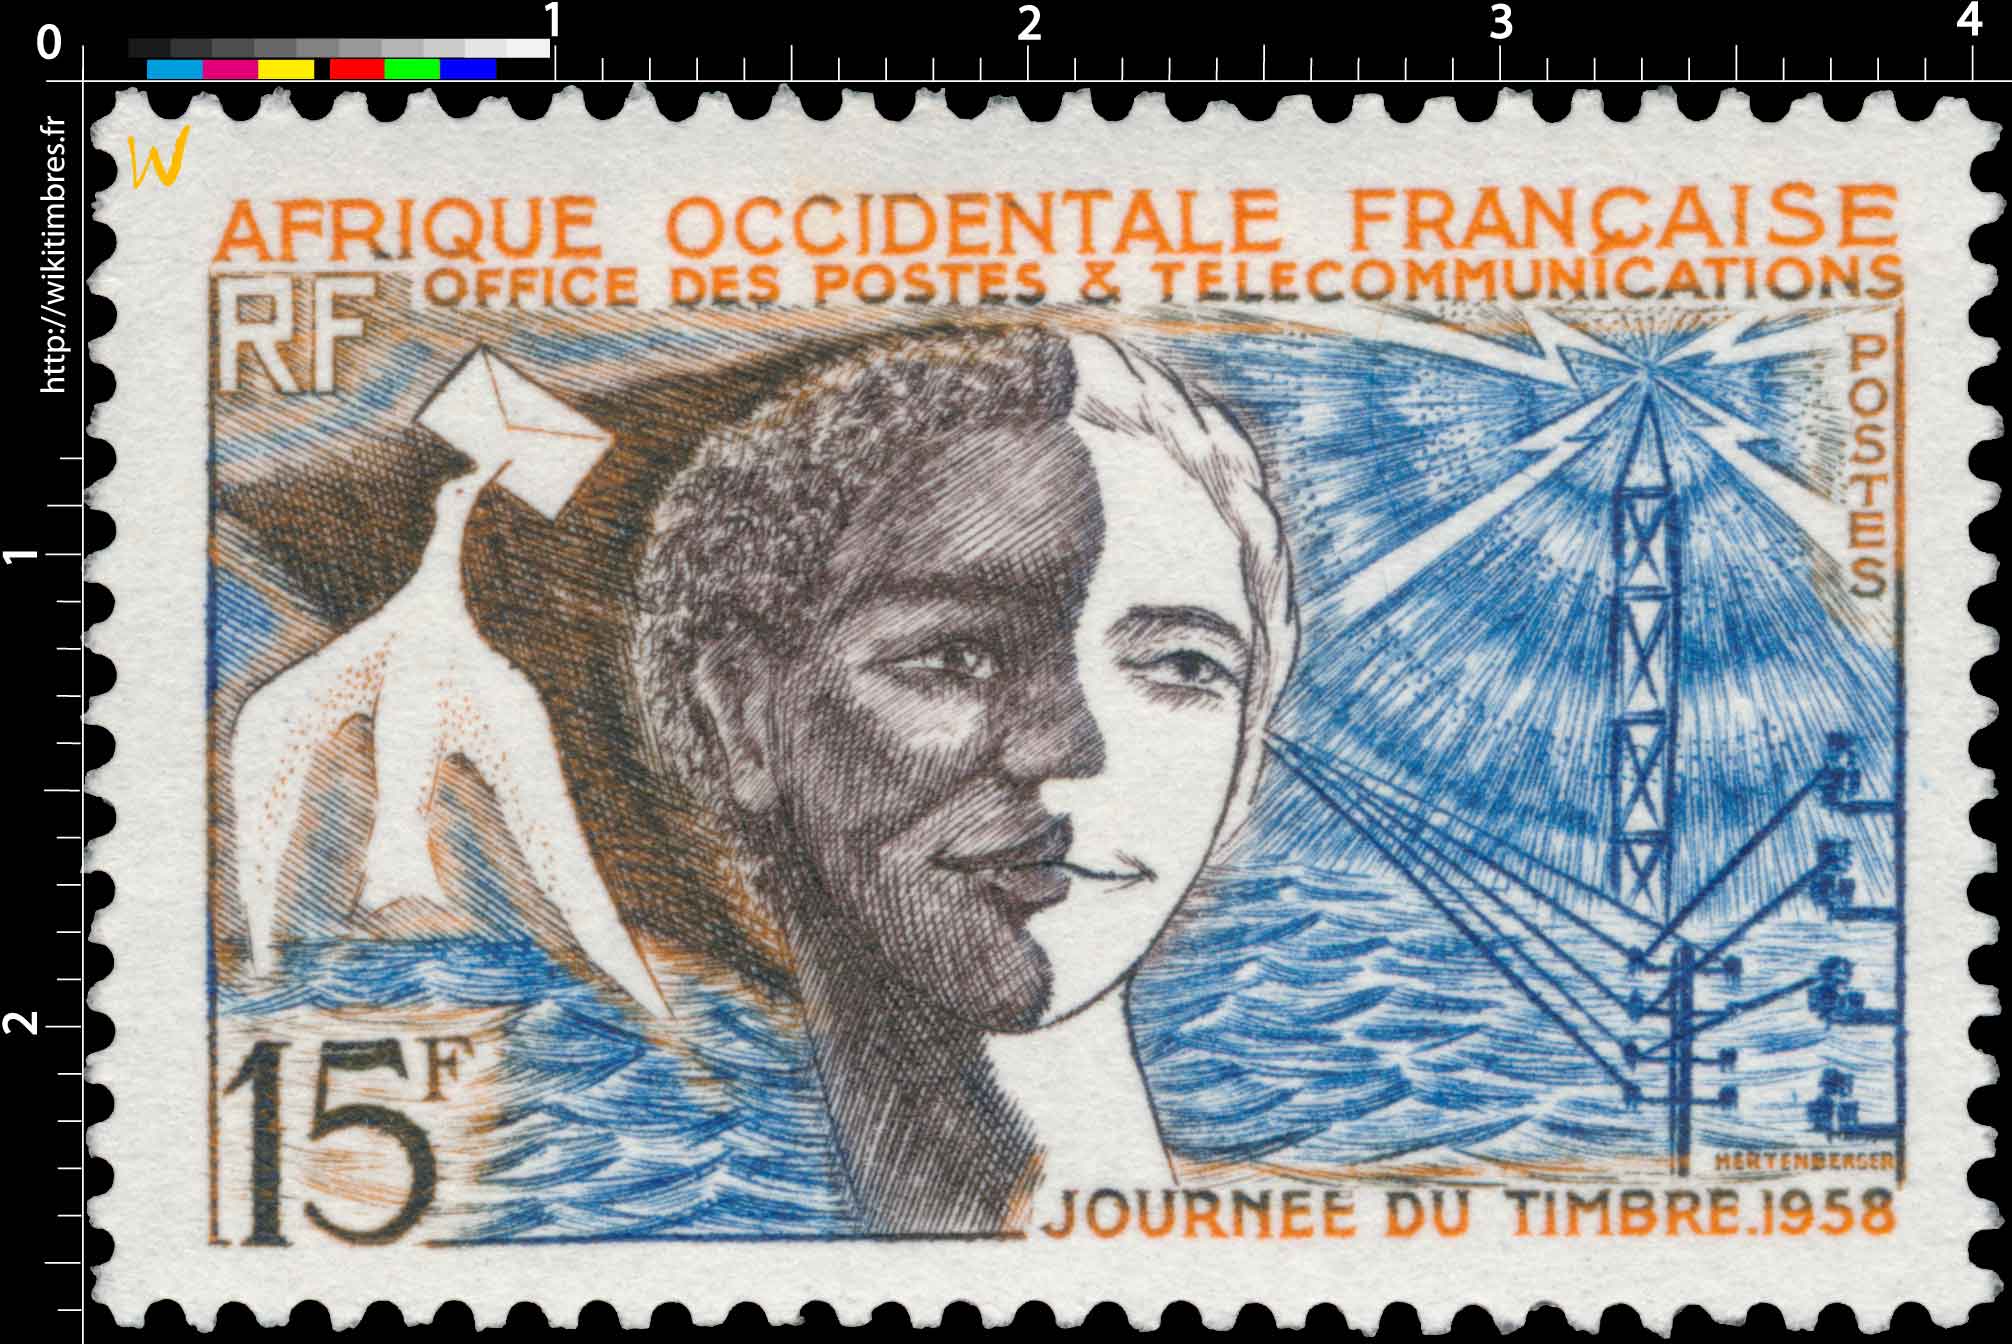 Afrique Occidentale Française - Journée du timbre 1958 